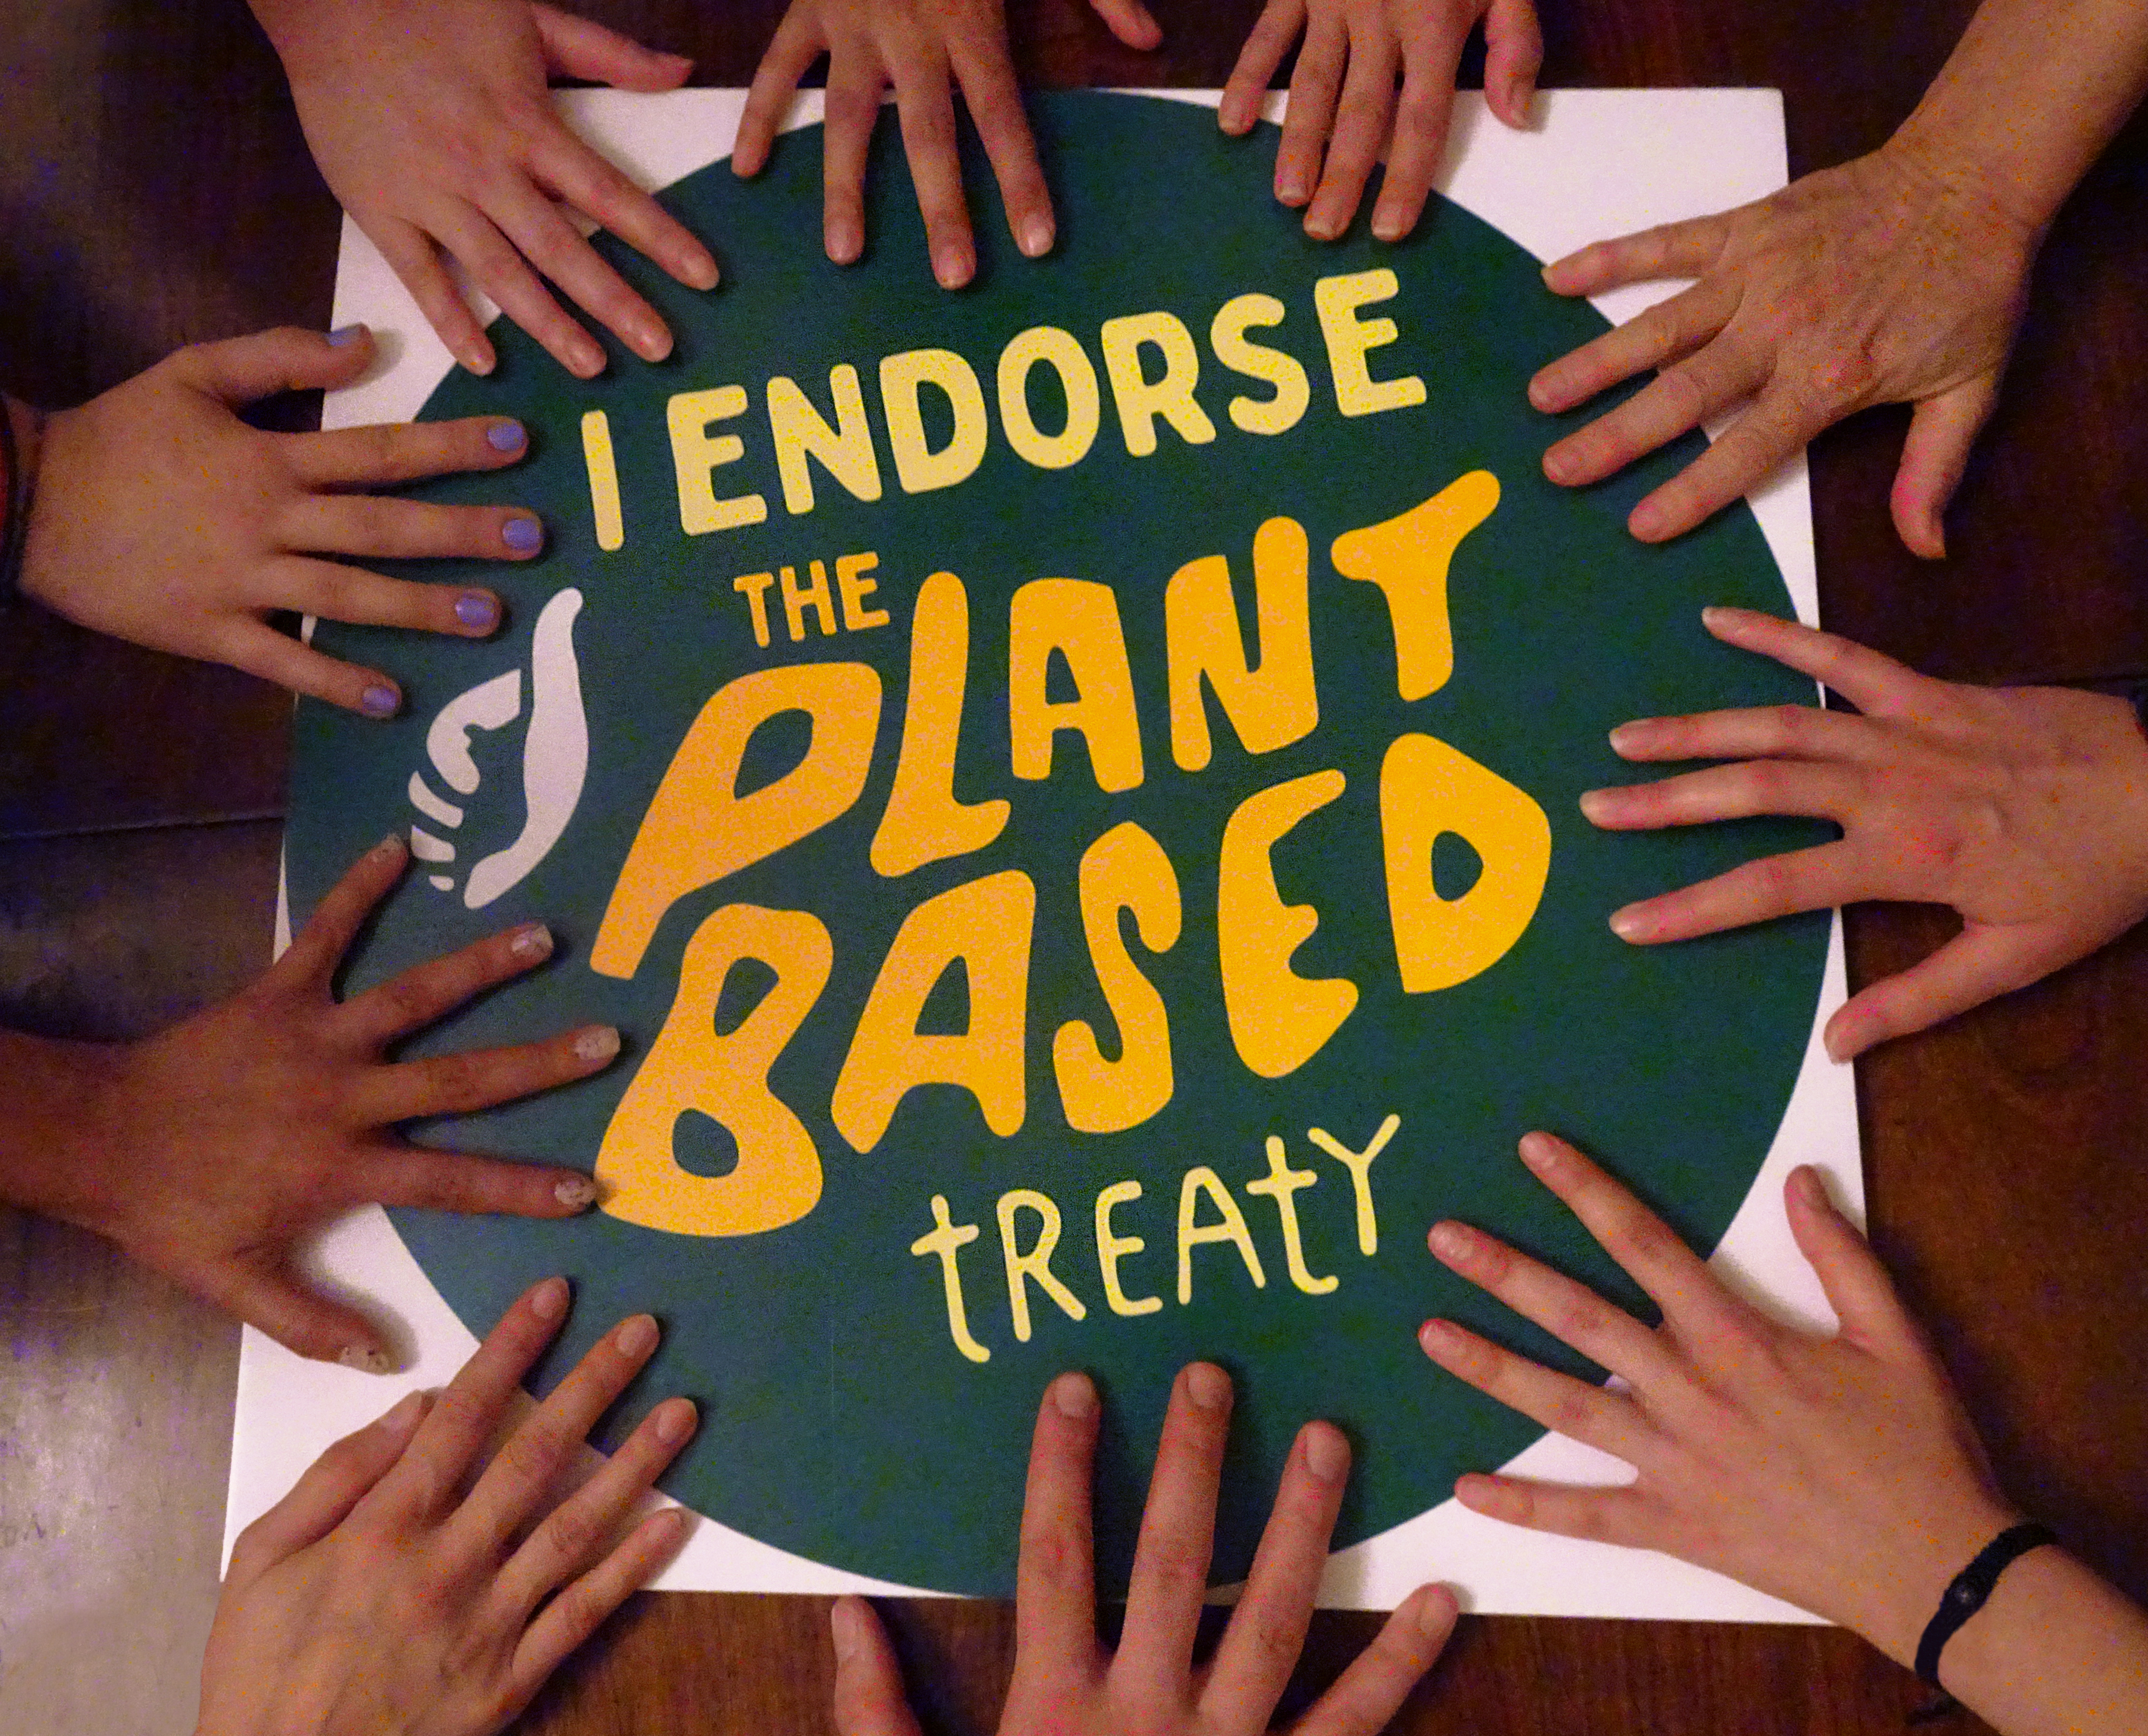 Bitki Temelli Anlaşma’ya desteğe çağırıyoruz